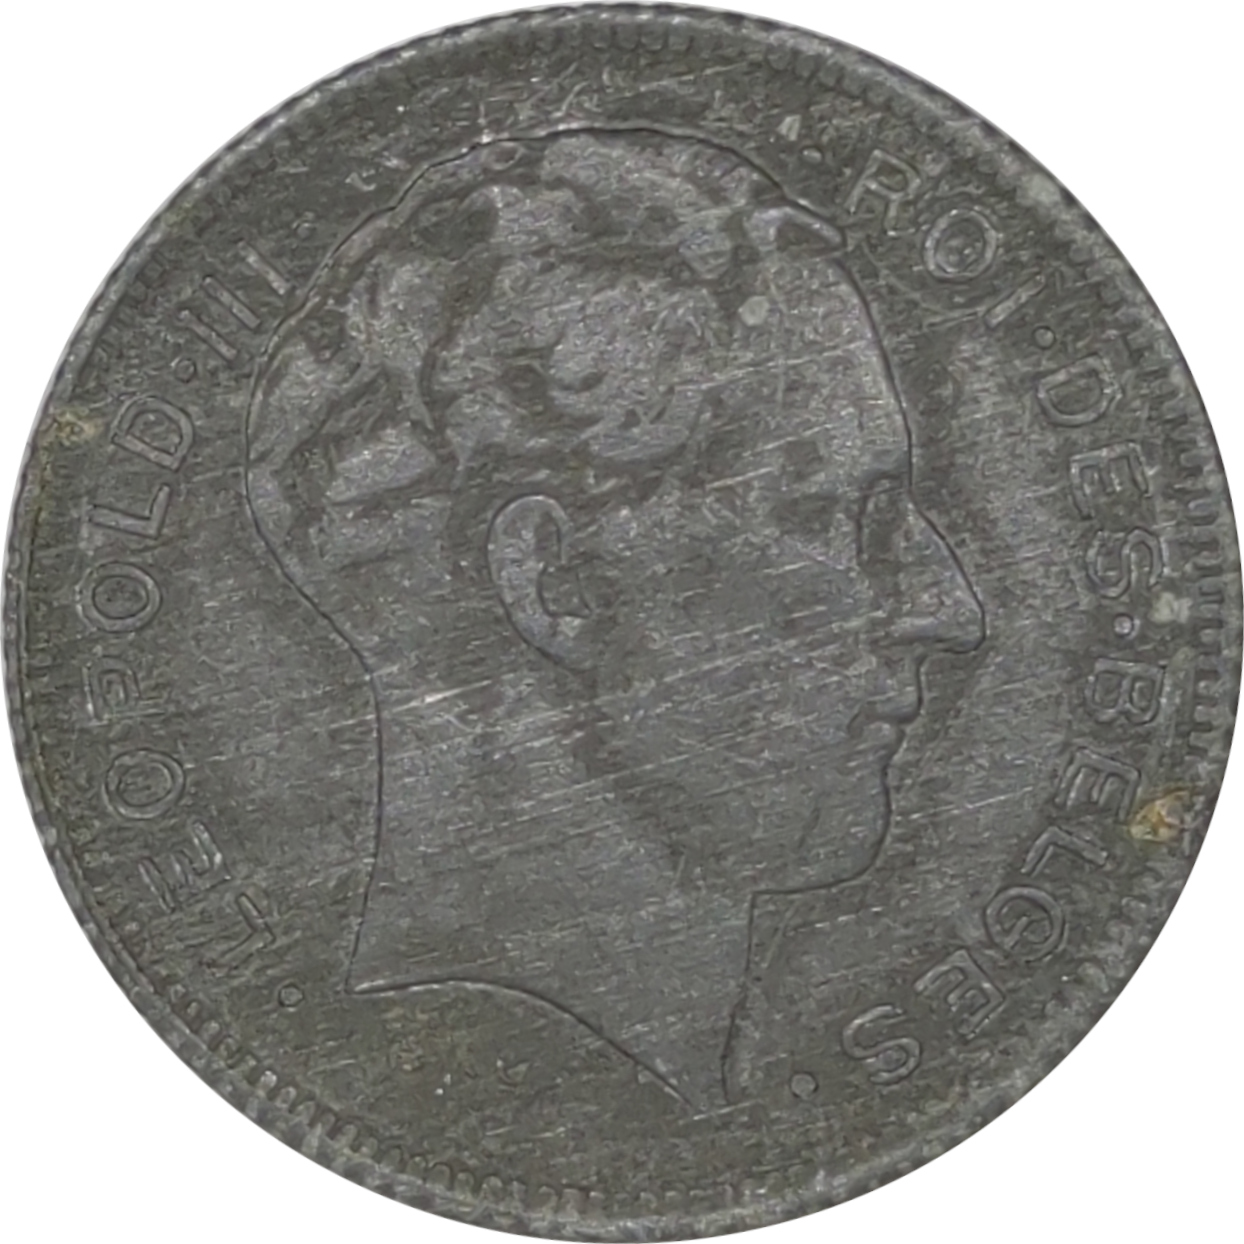 5 francs - Leopold III - Rau